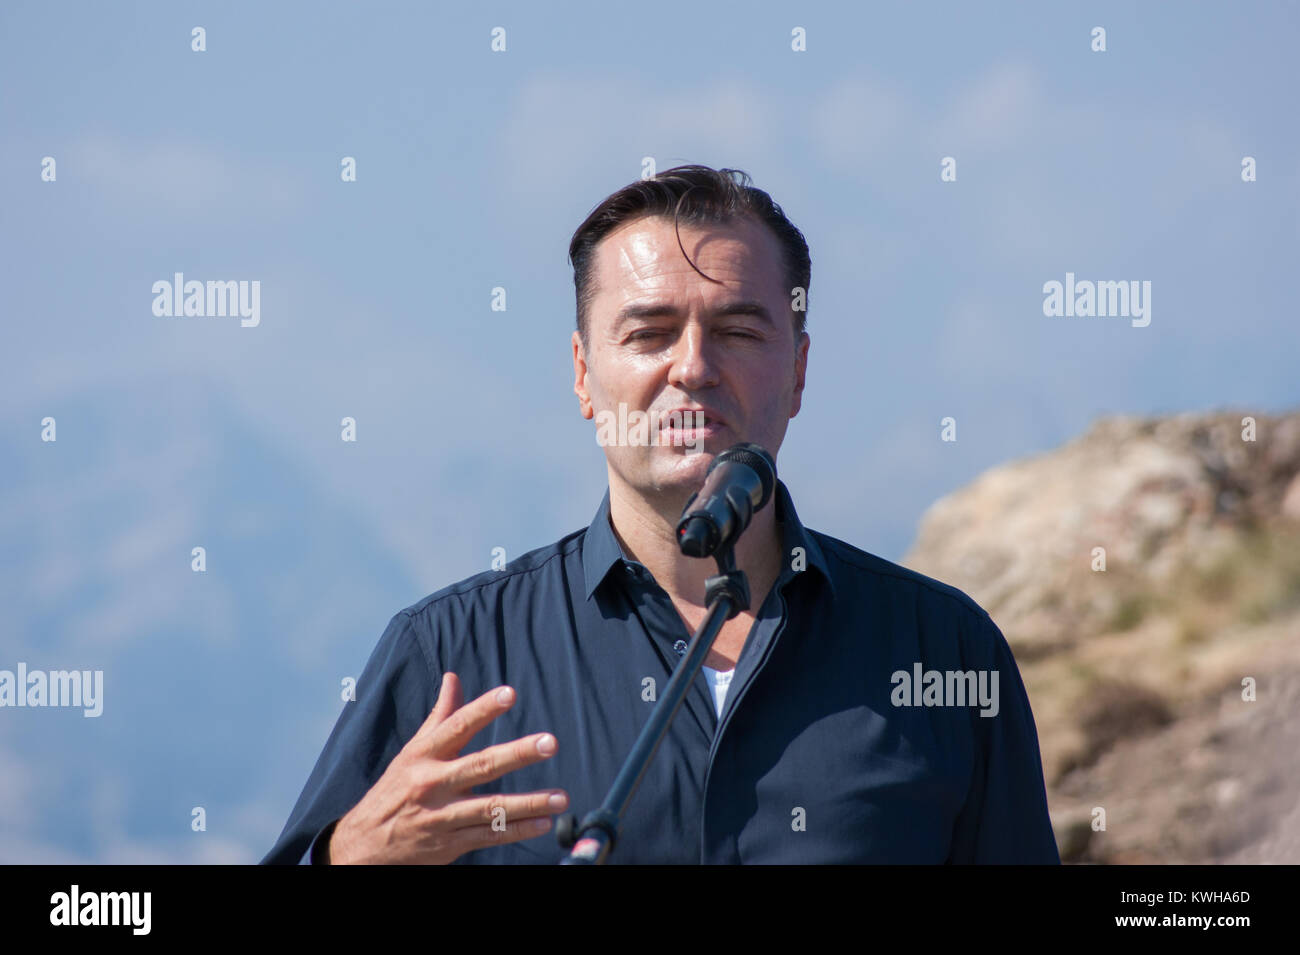 Portrait de l'architecte Patrik Schumacher, directeur à Zaha Hadid Architects s'exprimant à l'ouverture de la Messner Mountain Museum Corones, Italie, 2015 Banque D'Images